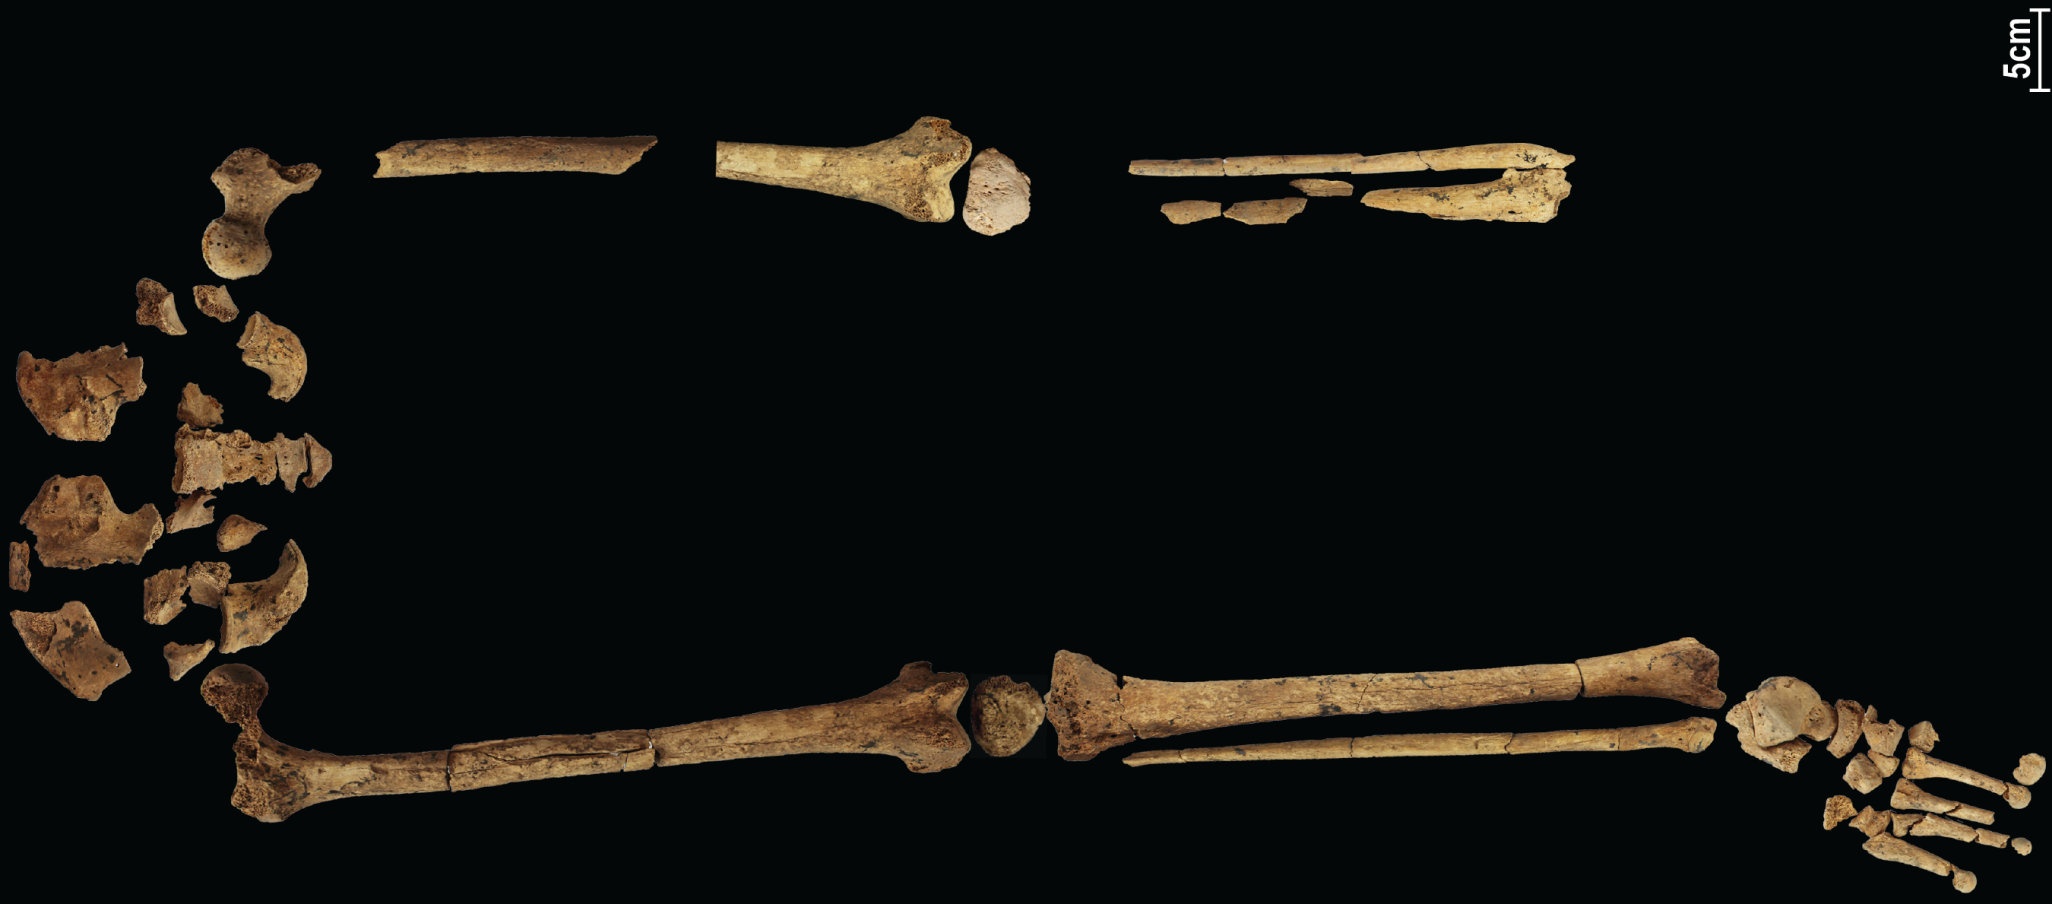 Скелет возрастом 31,000 3 лет, демонстрирующий самую раннюю из известных сложных операций, может переписать историю! XNUMX